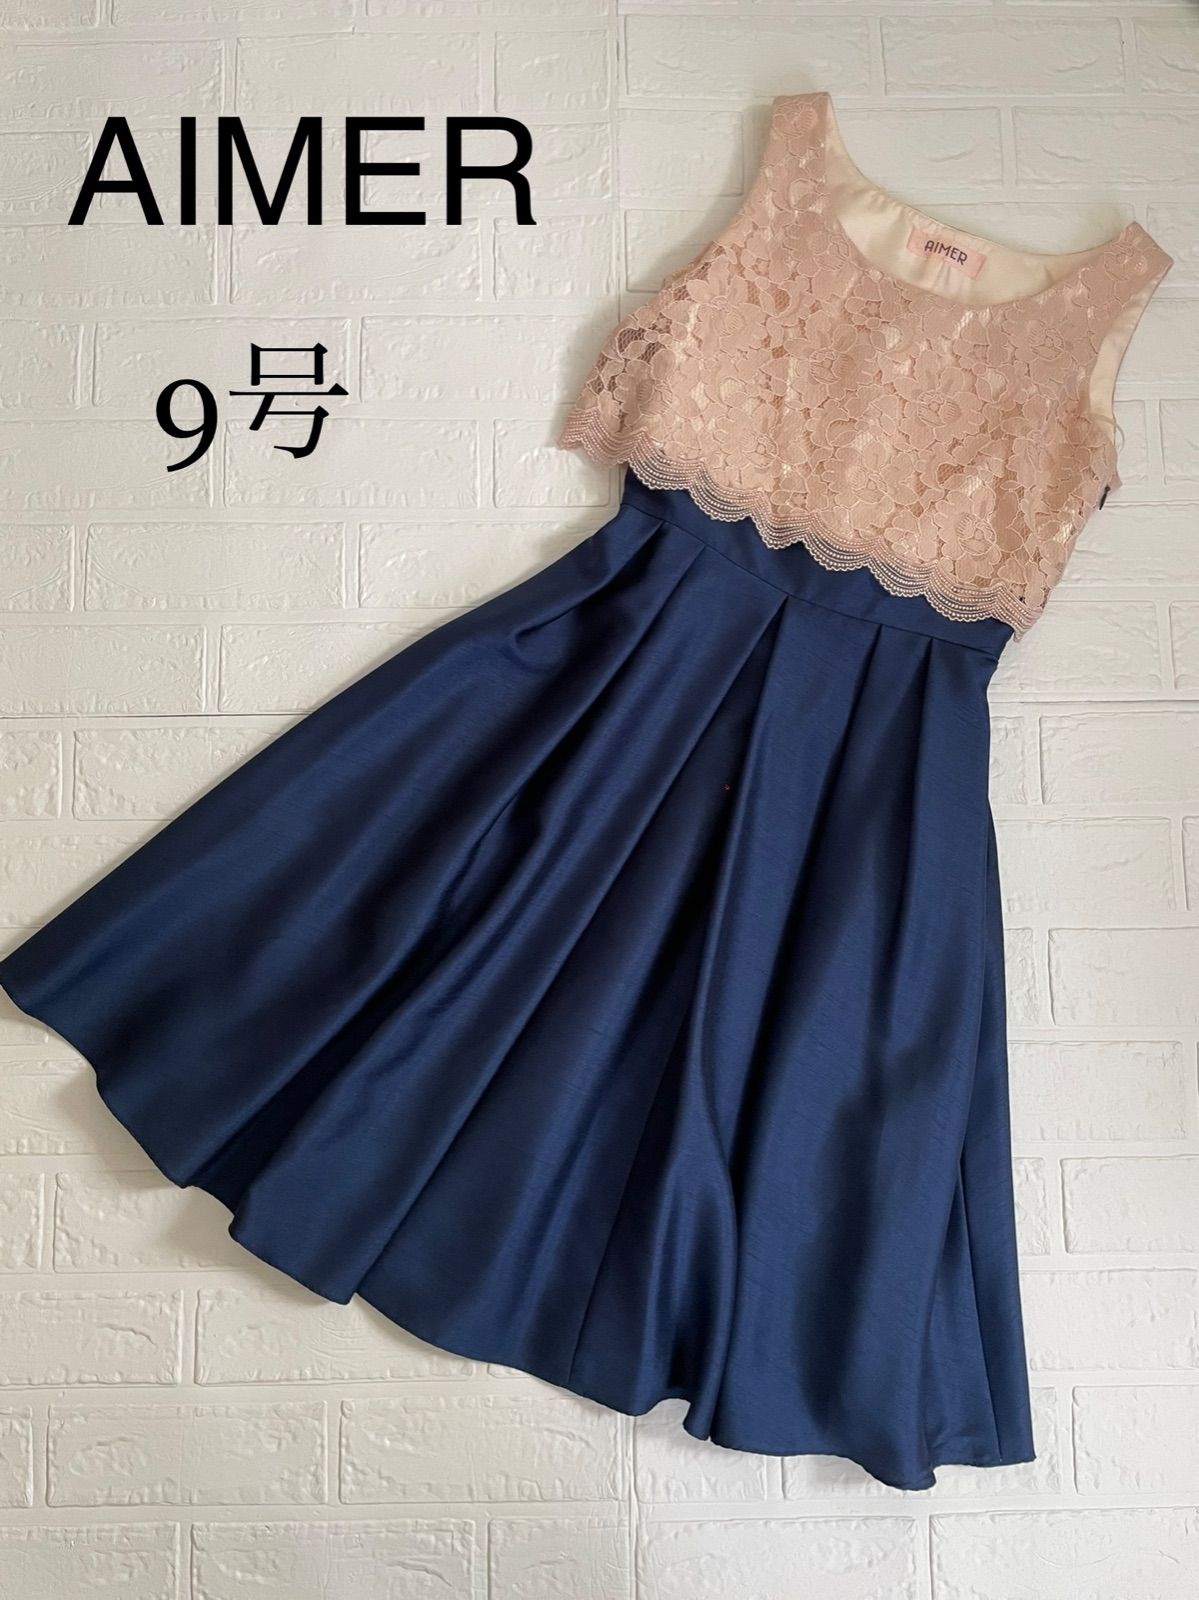 AIMER エメ ワンピース ドレス フォーマル パーティ ネイビー 9号 M - メルカリ